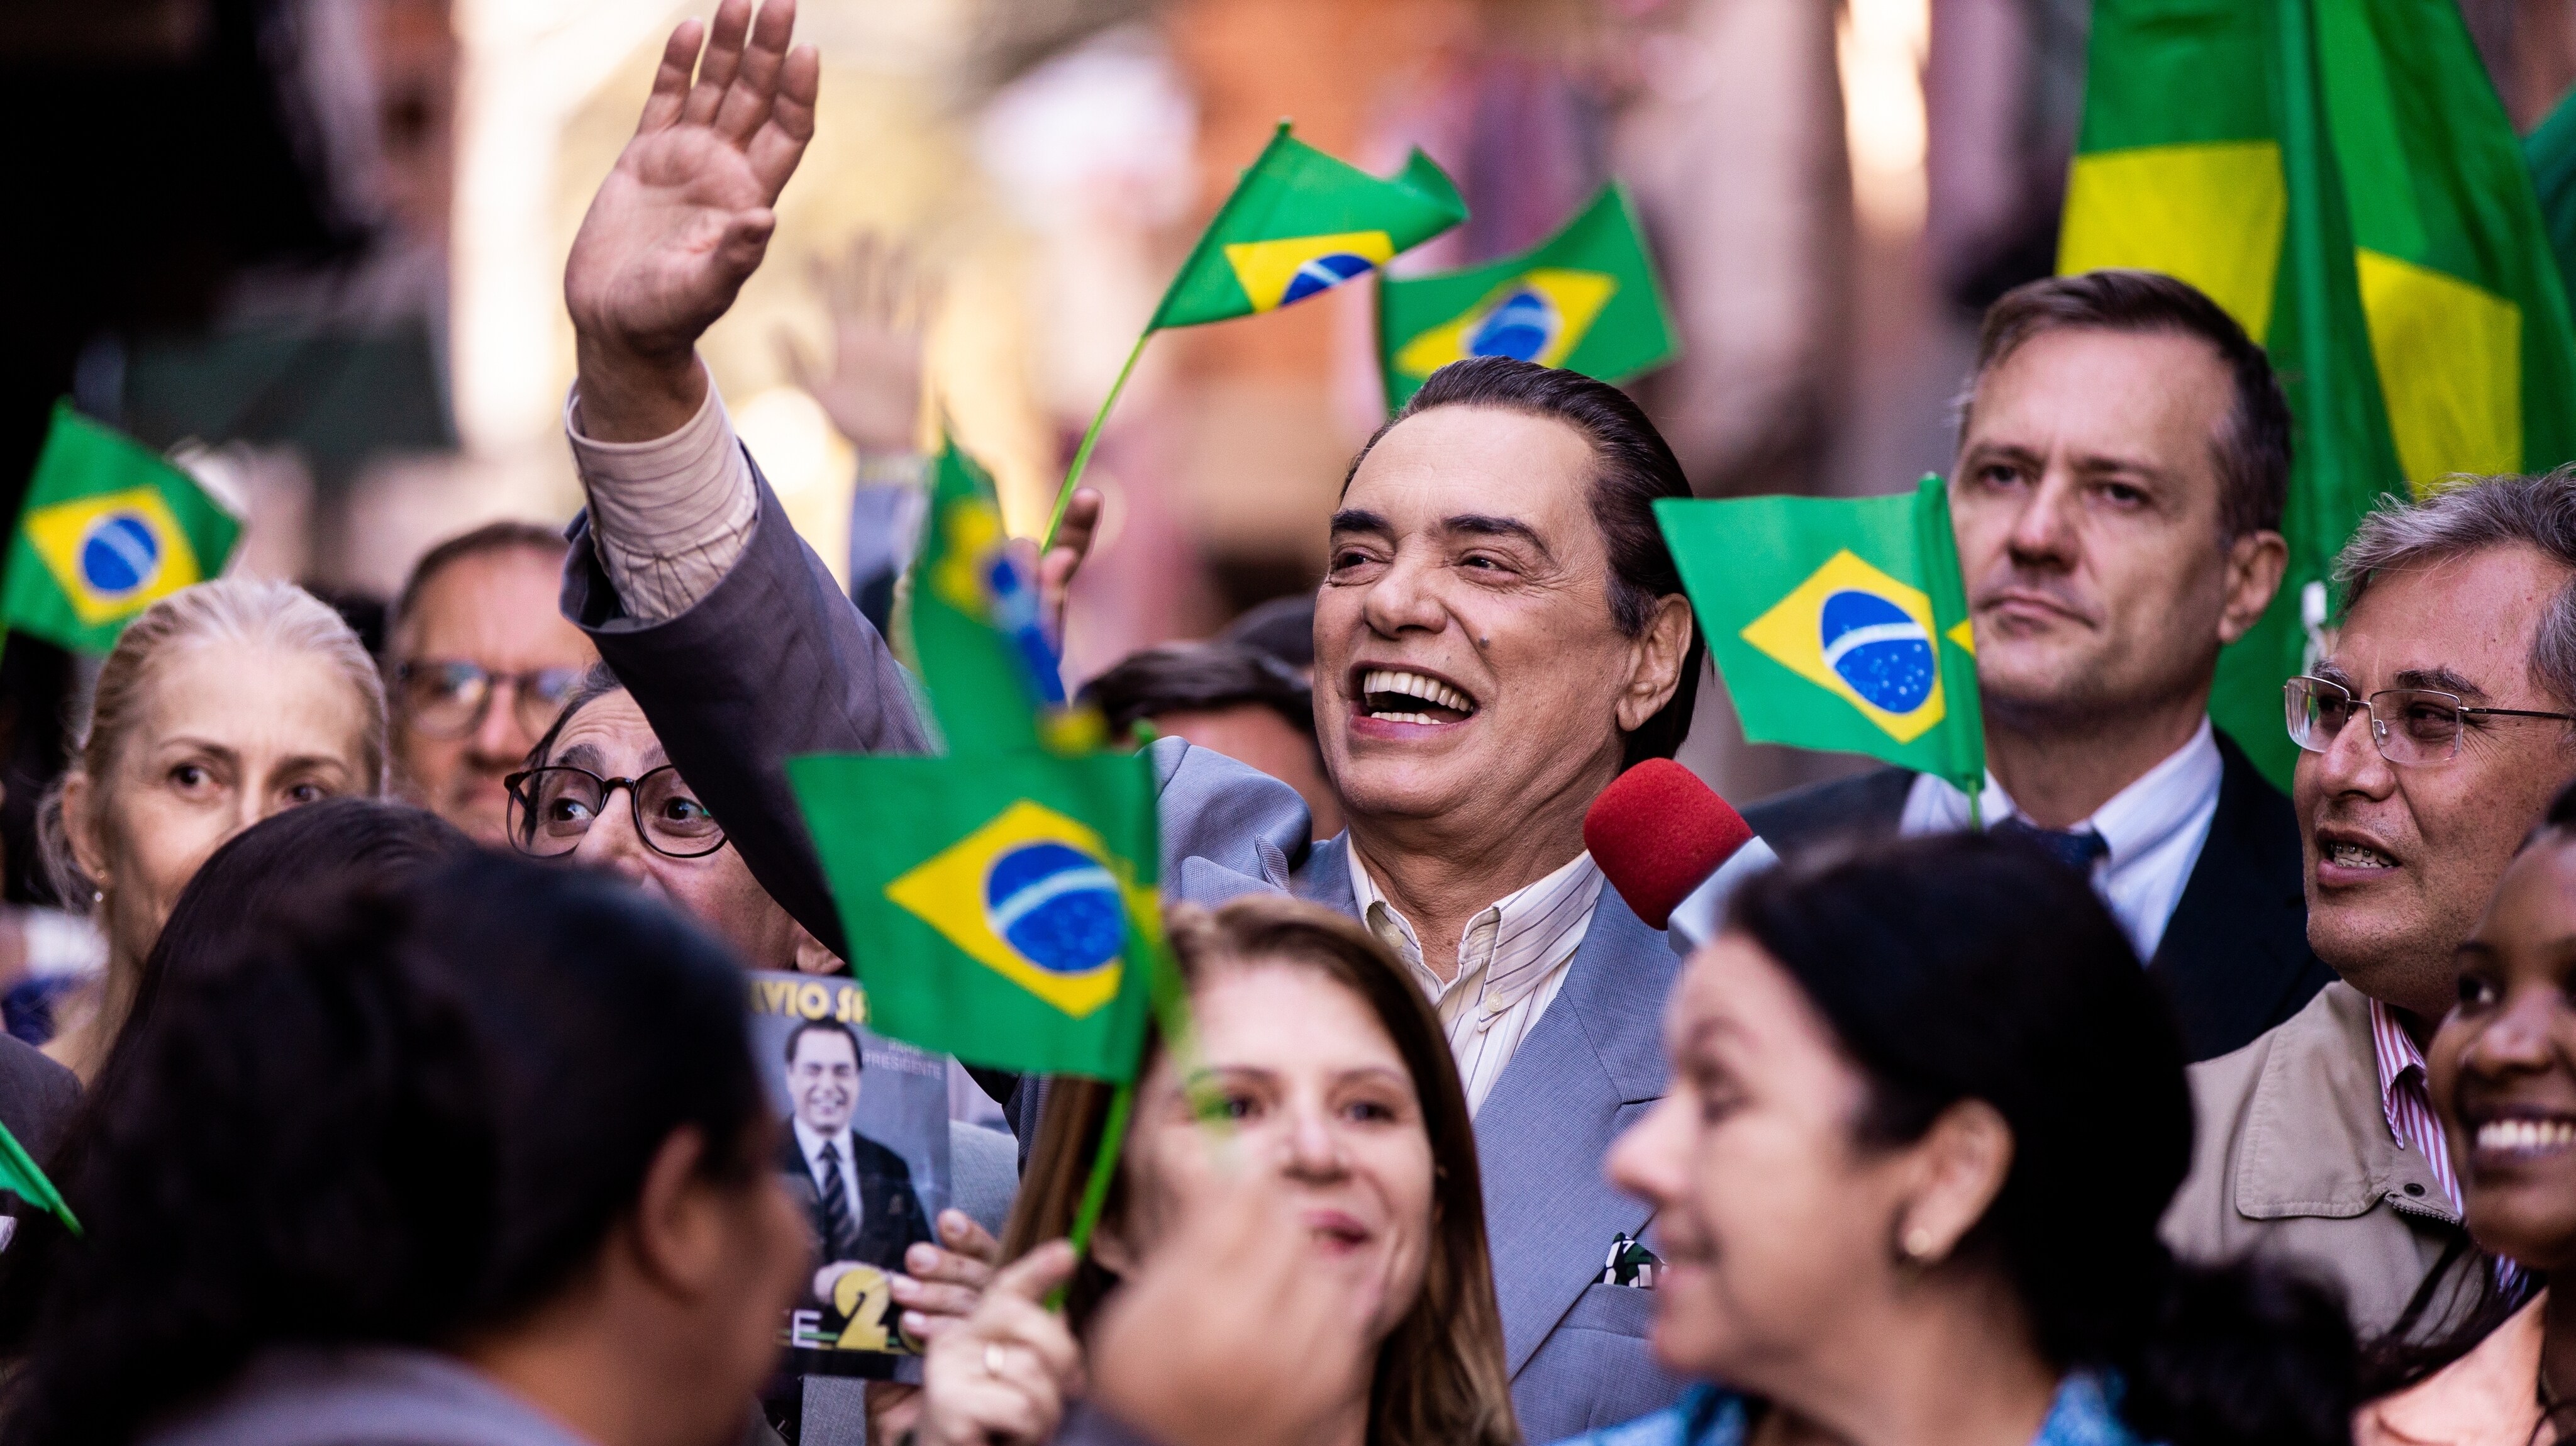 'O Rei da TV': é verdade que Silvio Santos foi candidato a presidente?